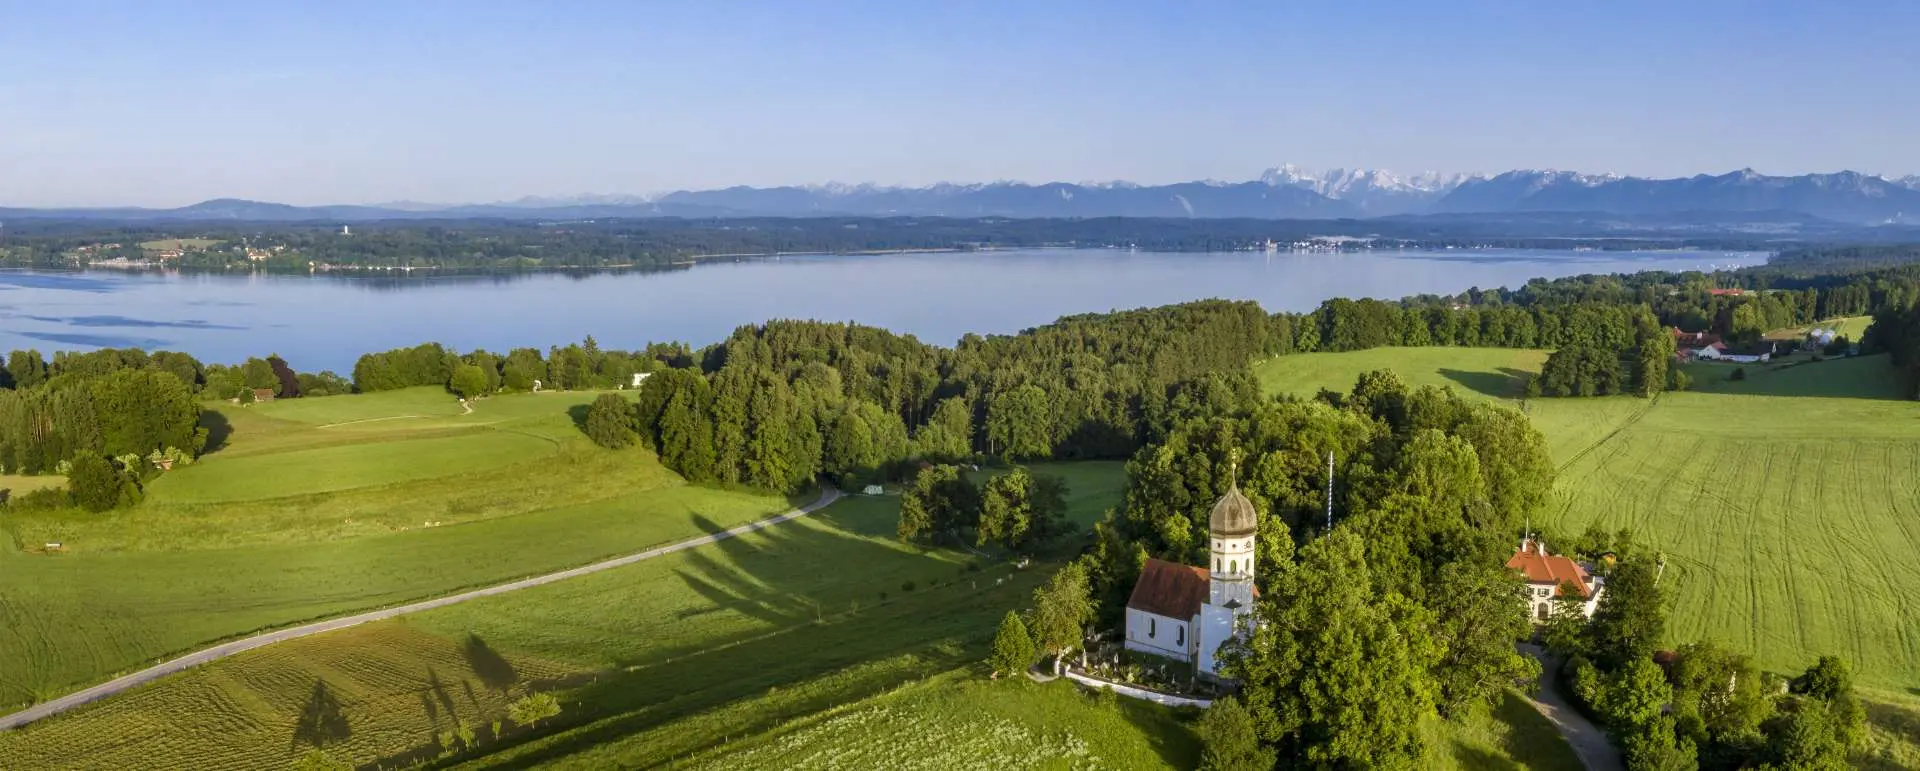 Lake Starnberg - the destination for group hotel for wine tastings